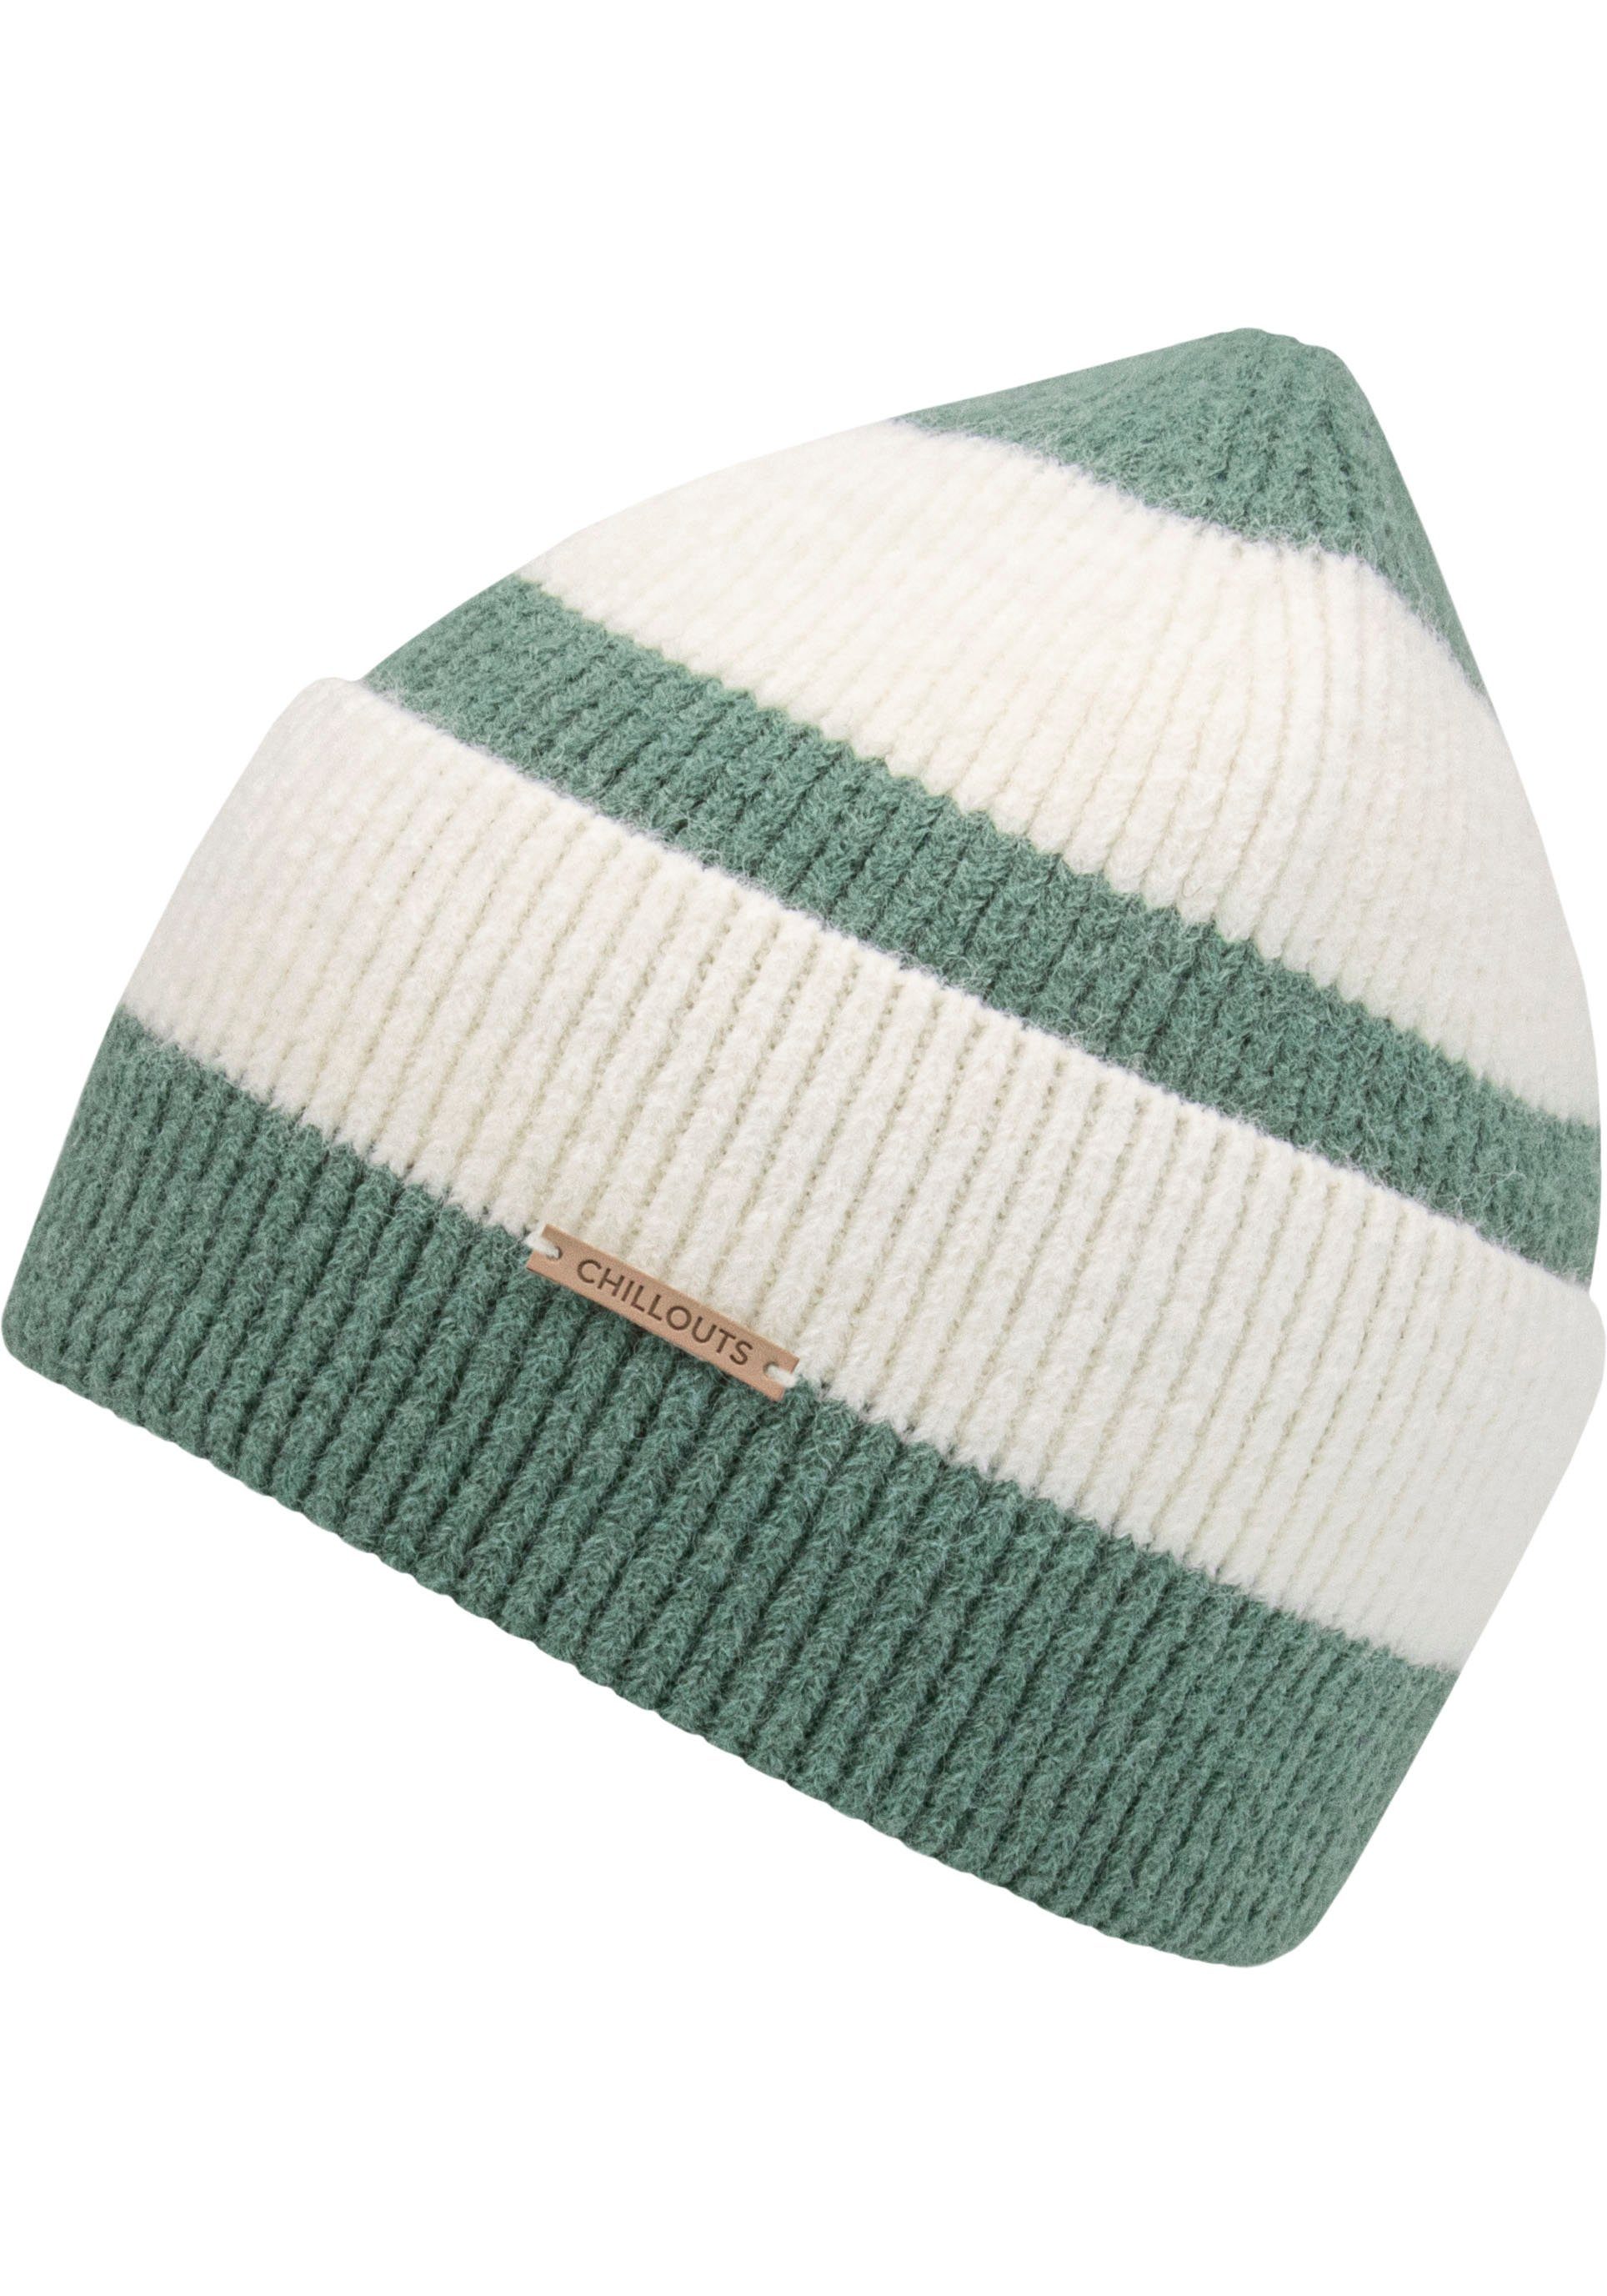 chillouts Strickmütze Susi Hat green stripes Blockstreifen-Look Im ash